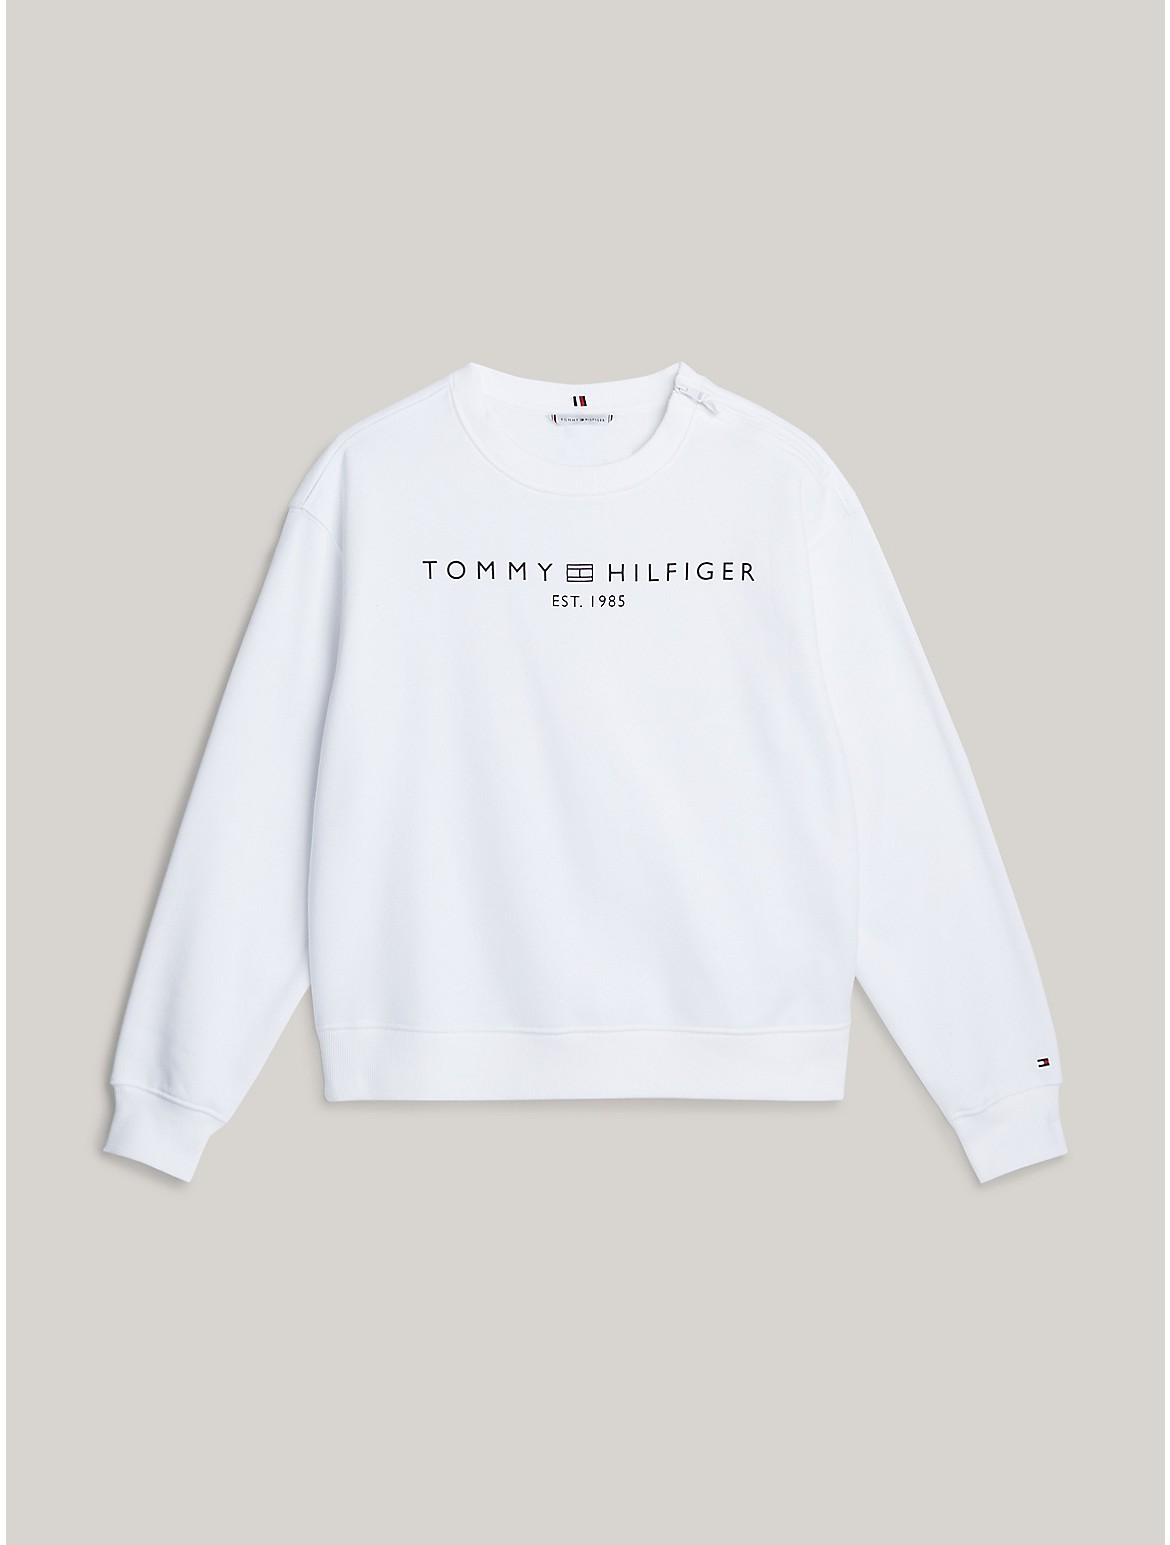 Tommy Hilfiger Women's Hilfiger Logo Sweatshirt